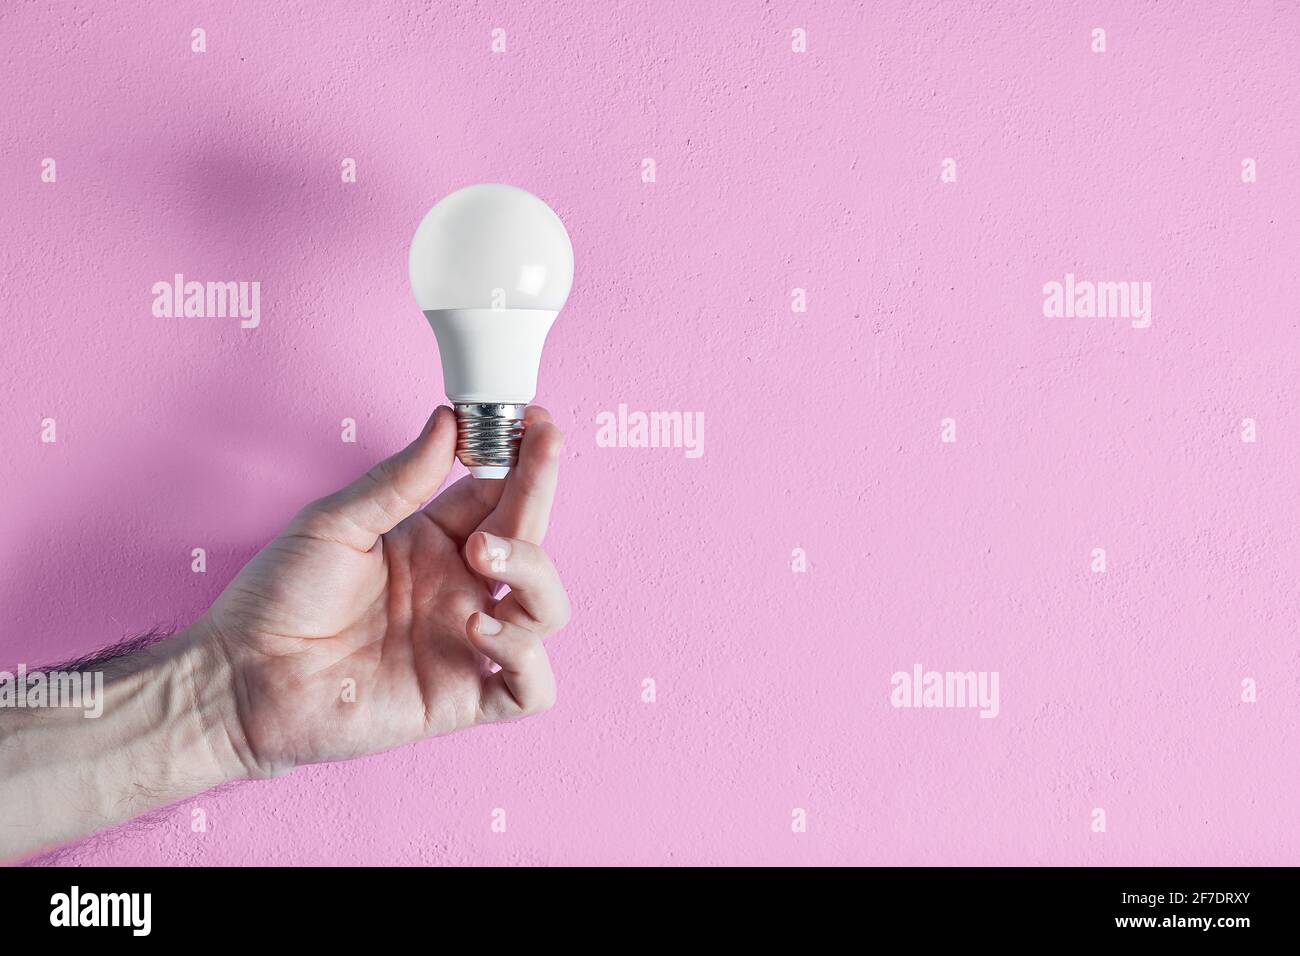 Die Hand eines jungen erwachsenen Mannes hält eine energieeffiziente Glühbirne vor einem rosa Wandhintergrund. Konzept von Kreativität, Effizienz und Nachhaltigkeit. Stockfoto